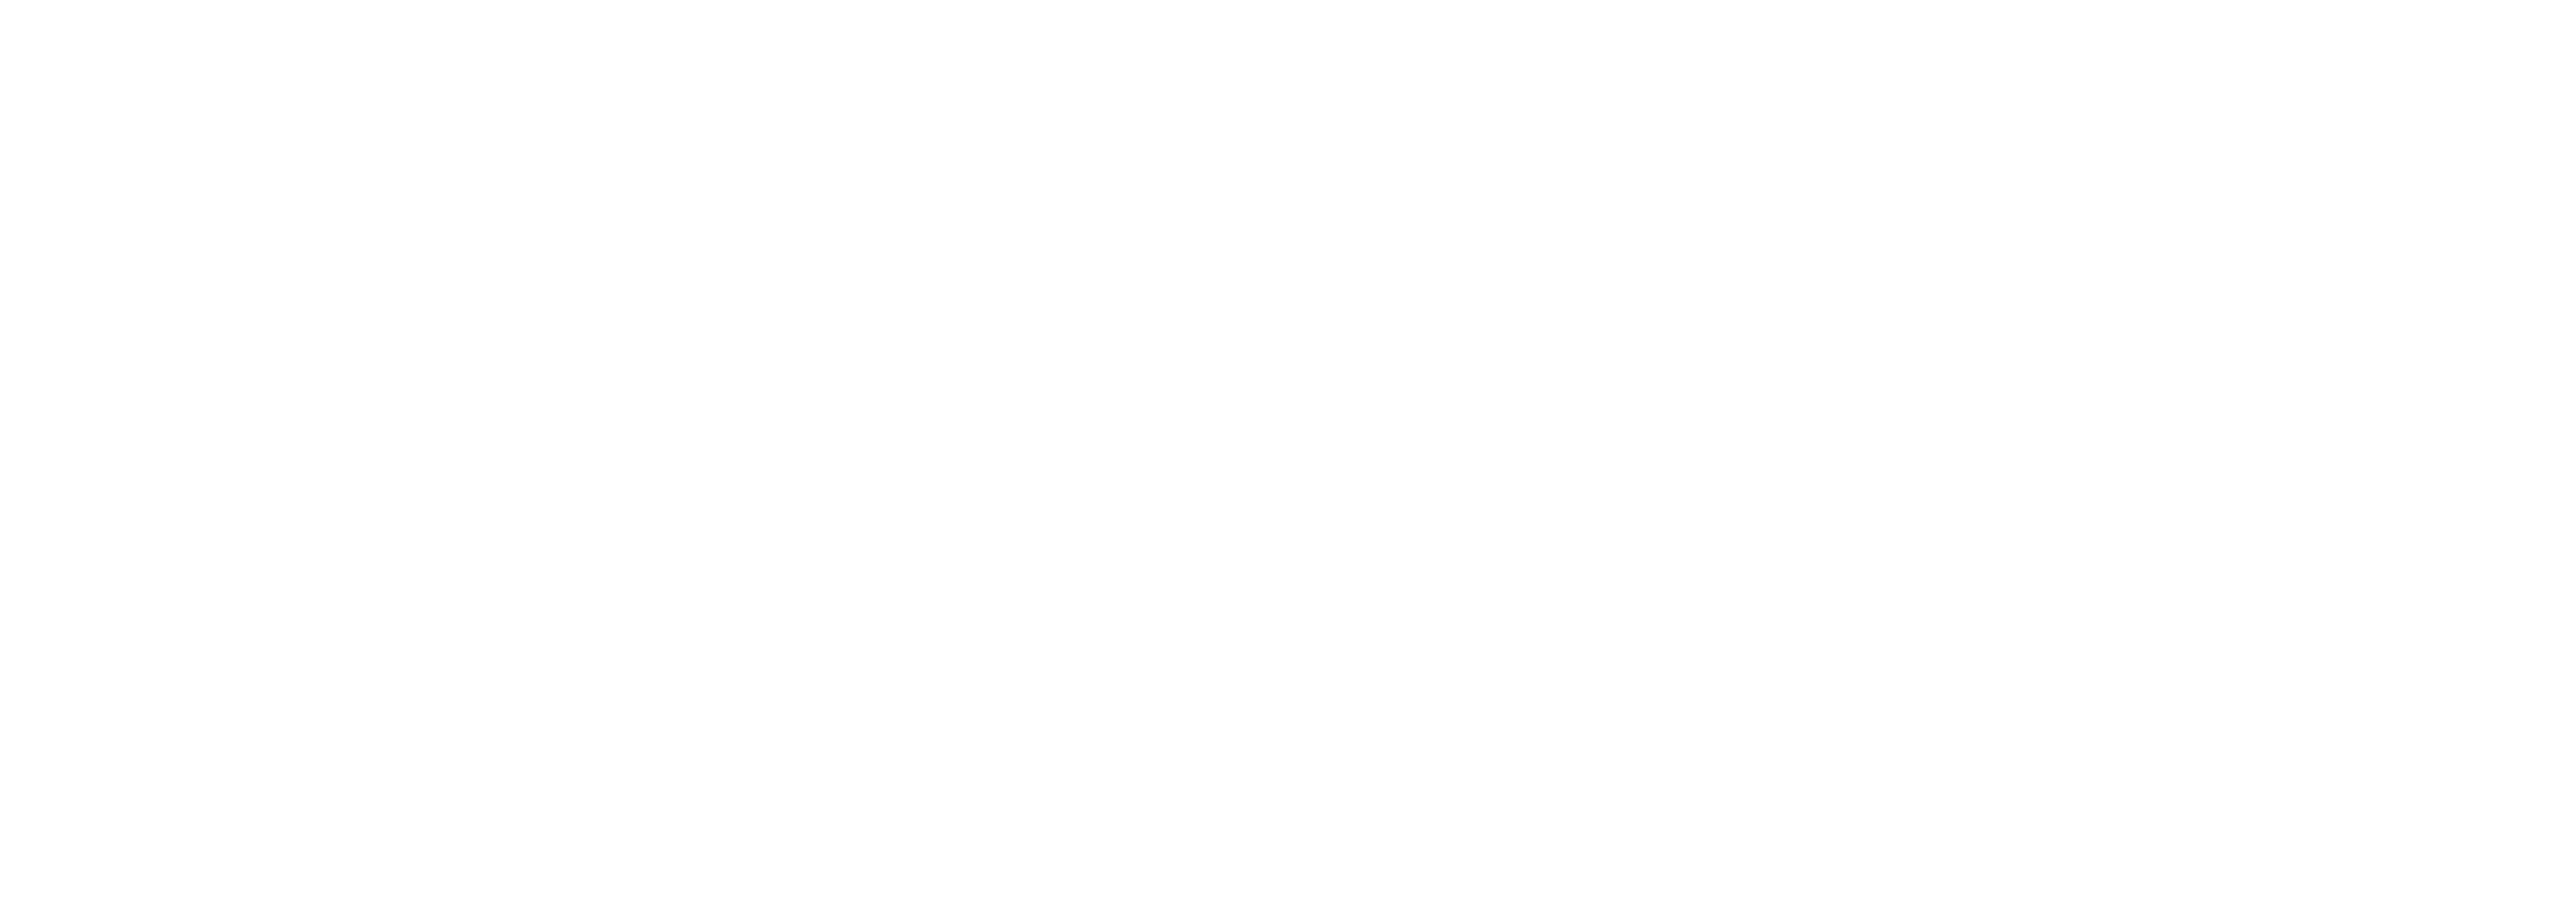 Lex-persona